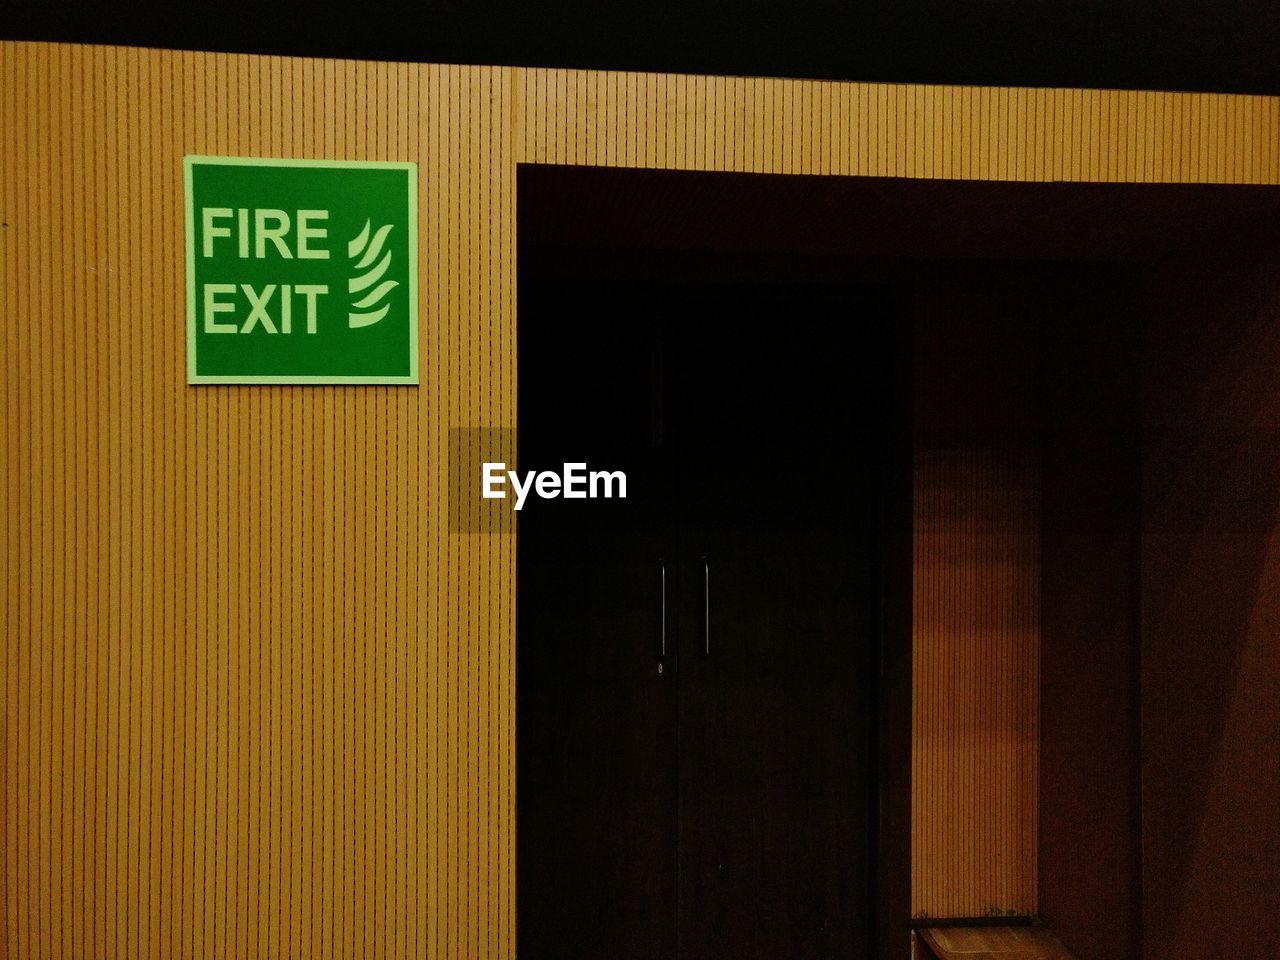 Fire exit door with board